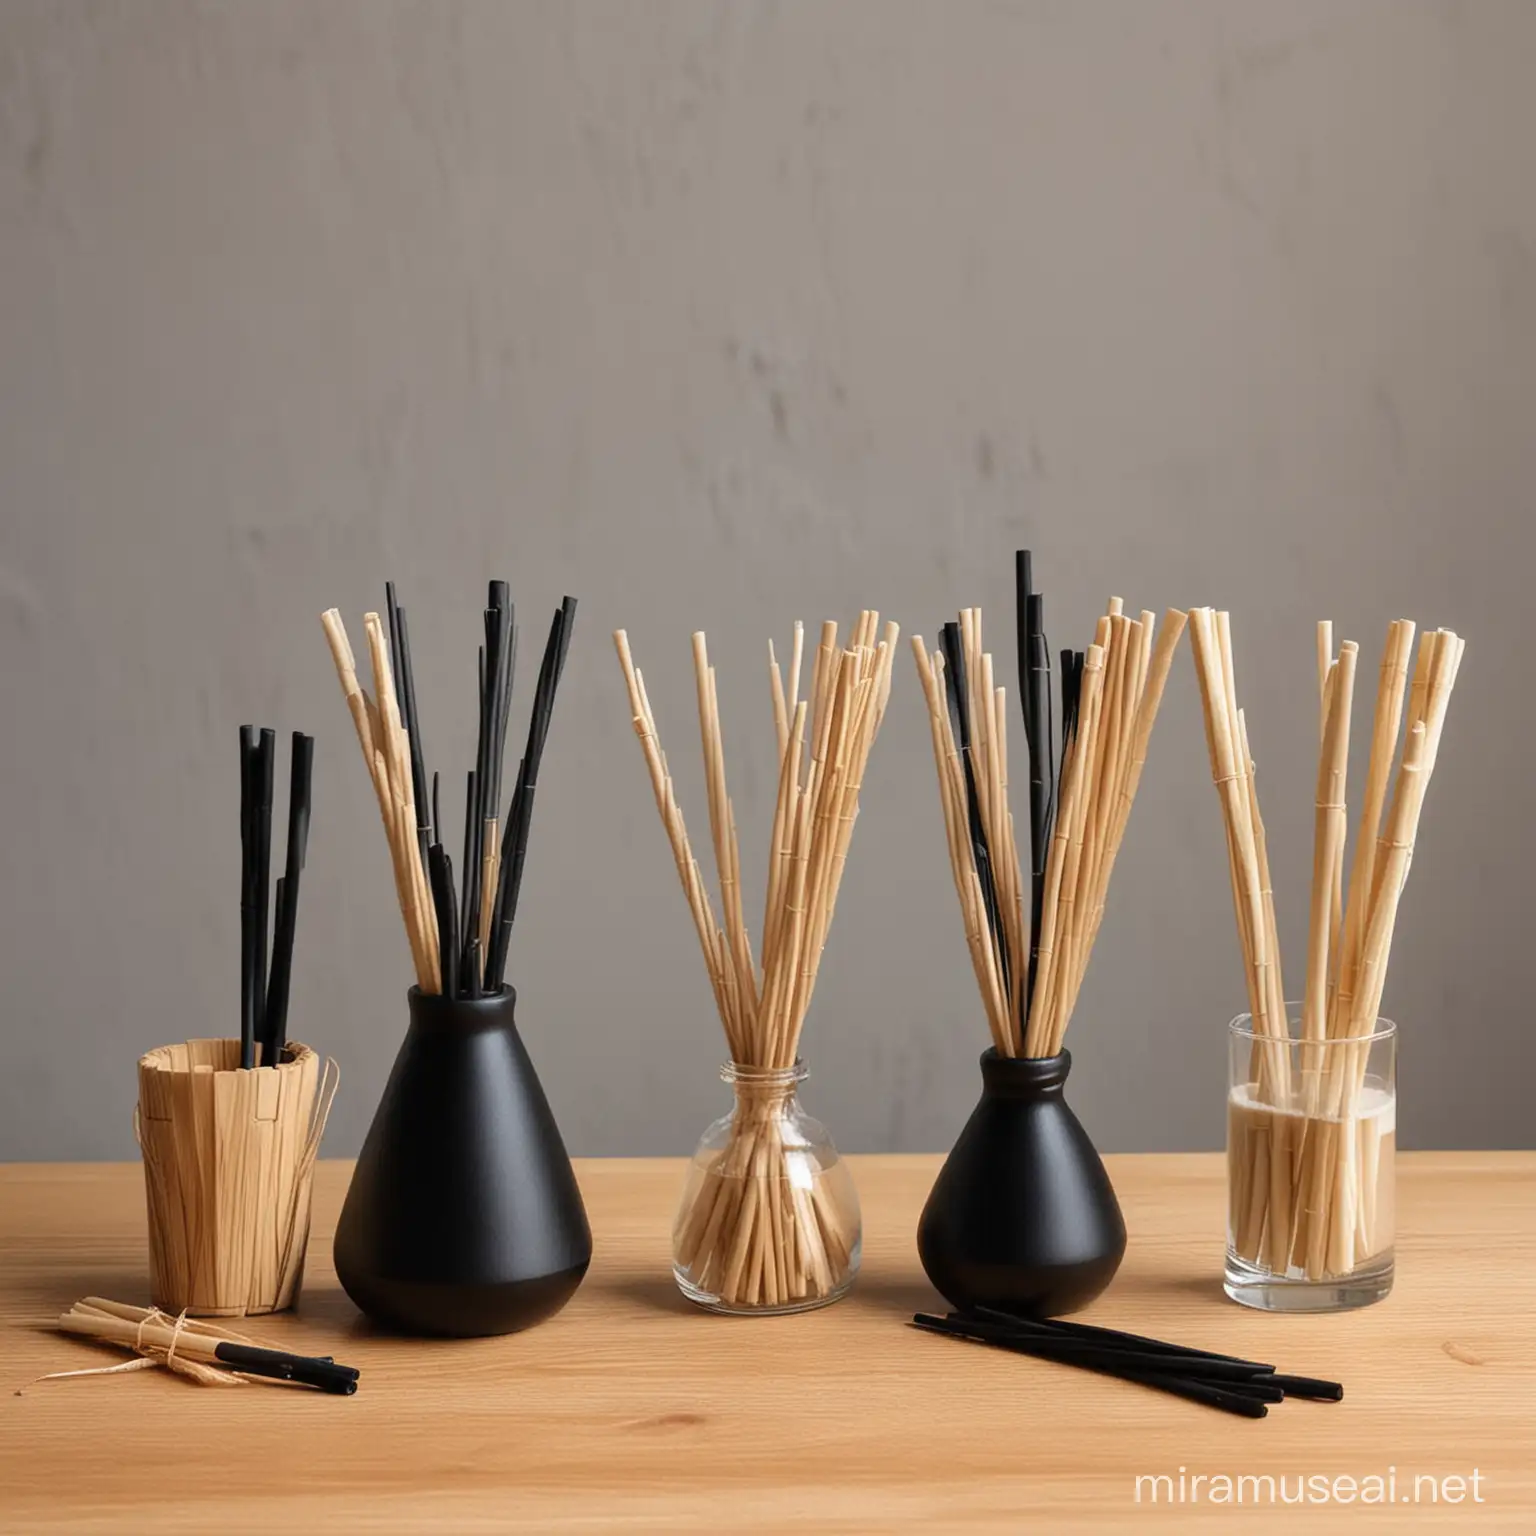 3种香薰扩香棒放在桌子上做对比。分别是木质棒，竹质棒，纤维棒（黑色）。